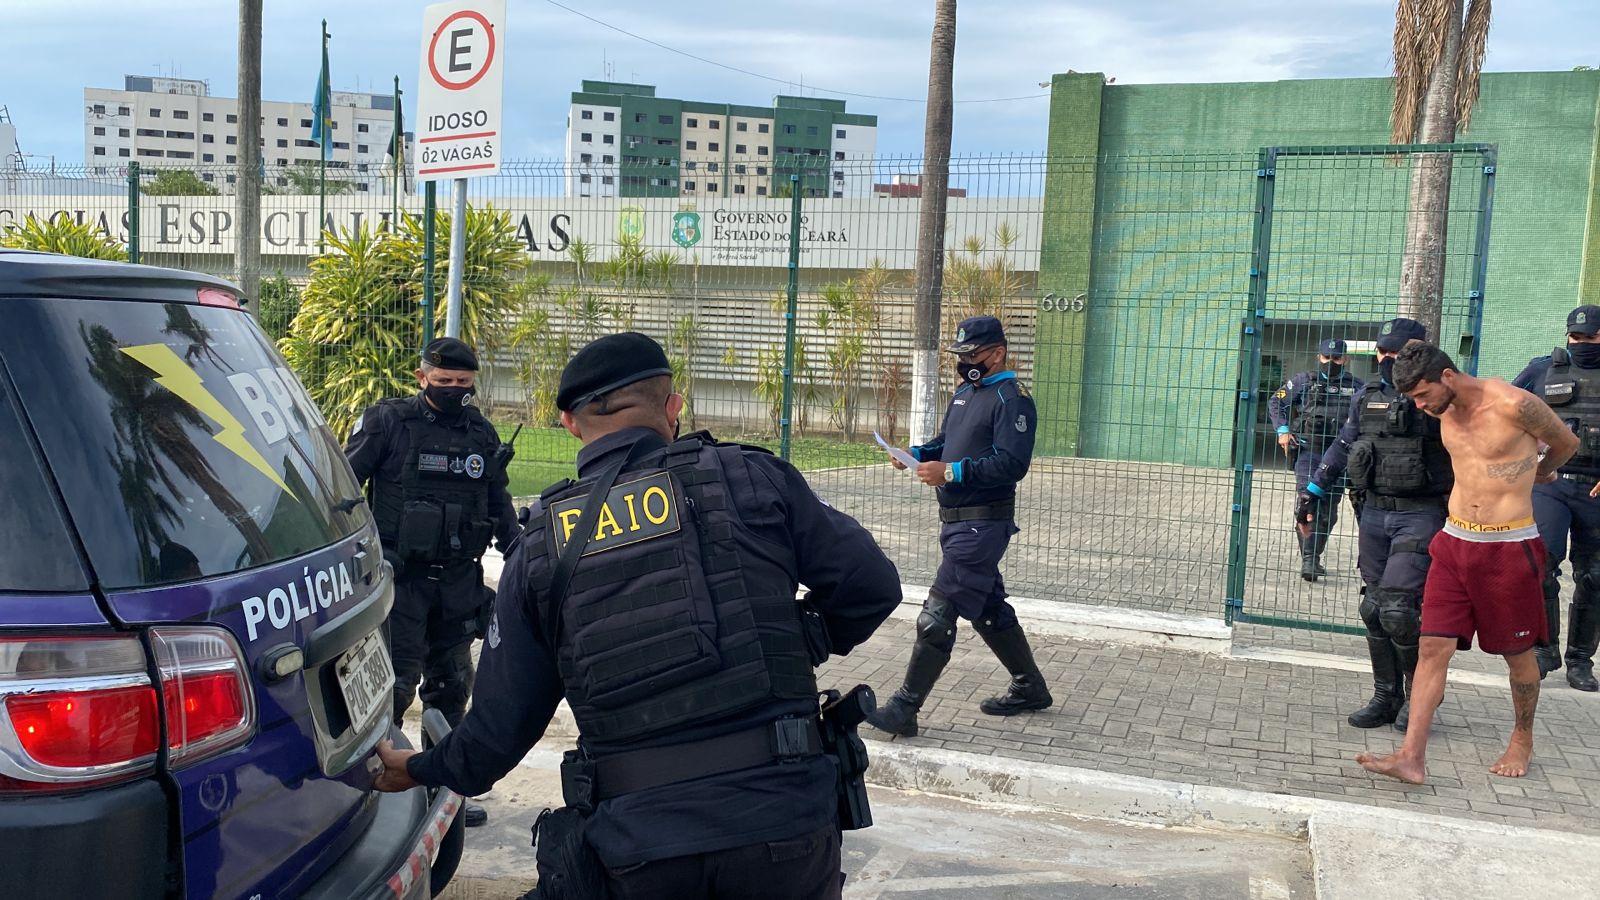 Suspeito preso em cativeiro na Messejana sendo conduzido para viaturas por diversos policiais